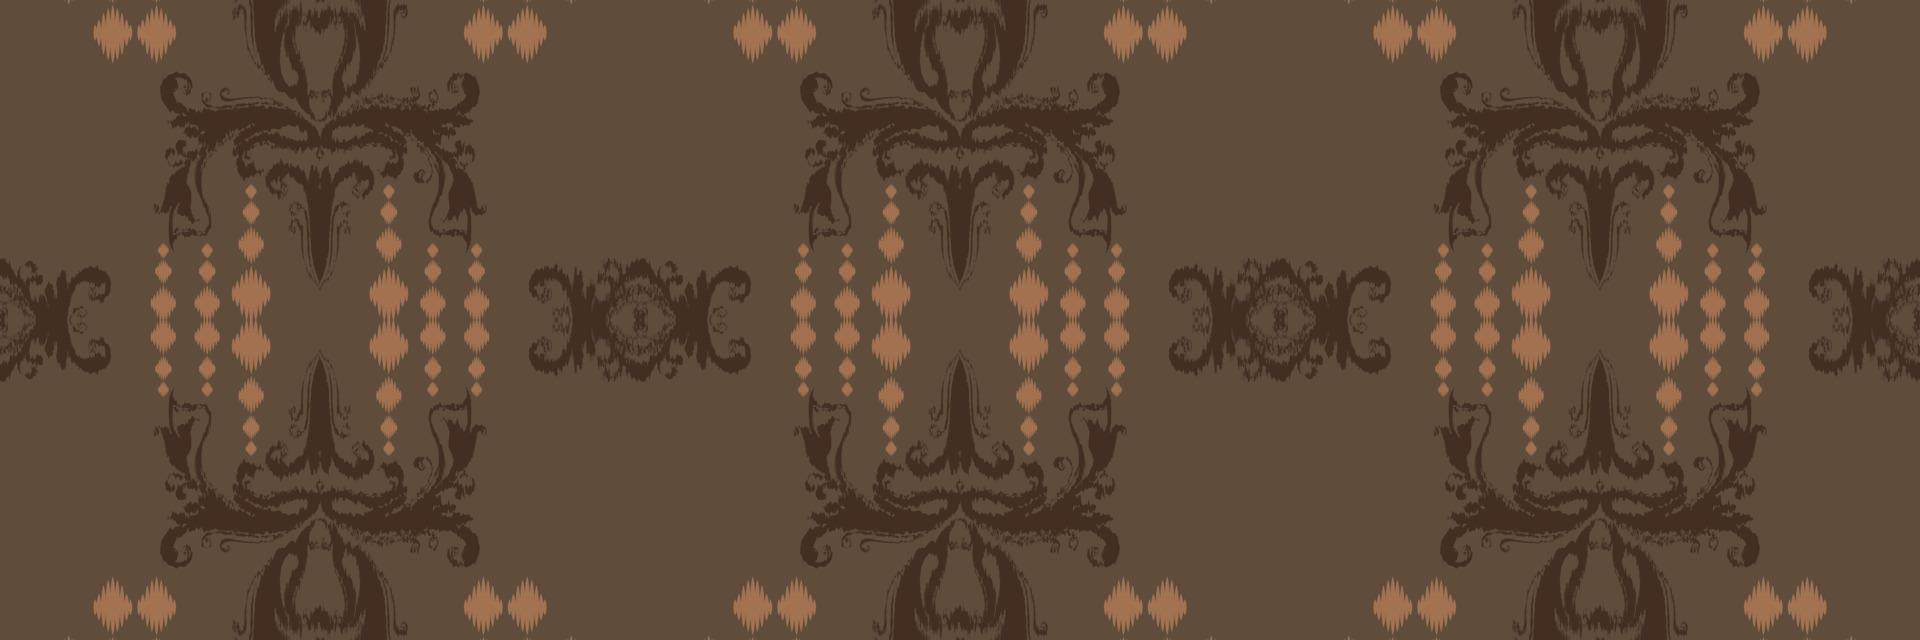 motivo africano ikat batik padrão têxtil sem costura design de vetor digital para impressão saree kurti borneo tecido borda pincel símbolos amostras elegantes